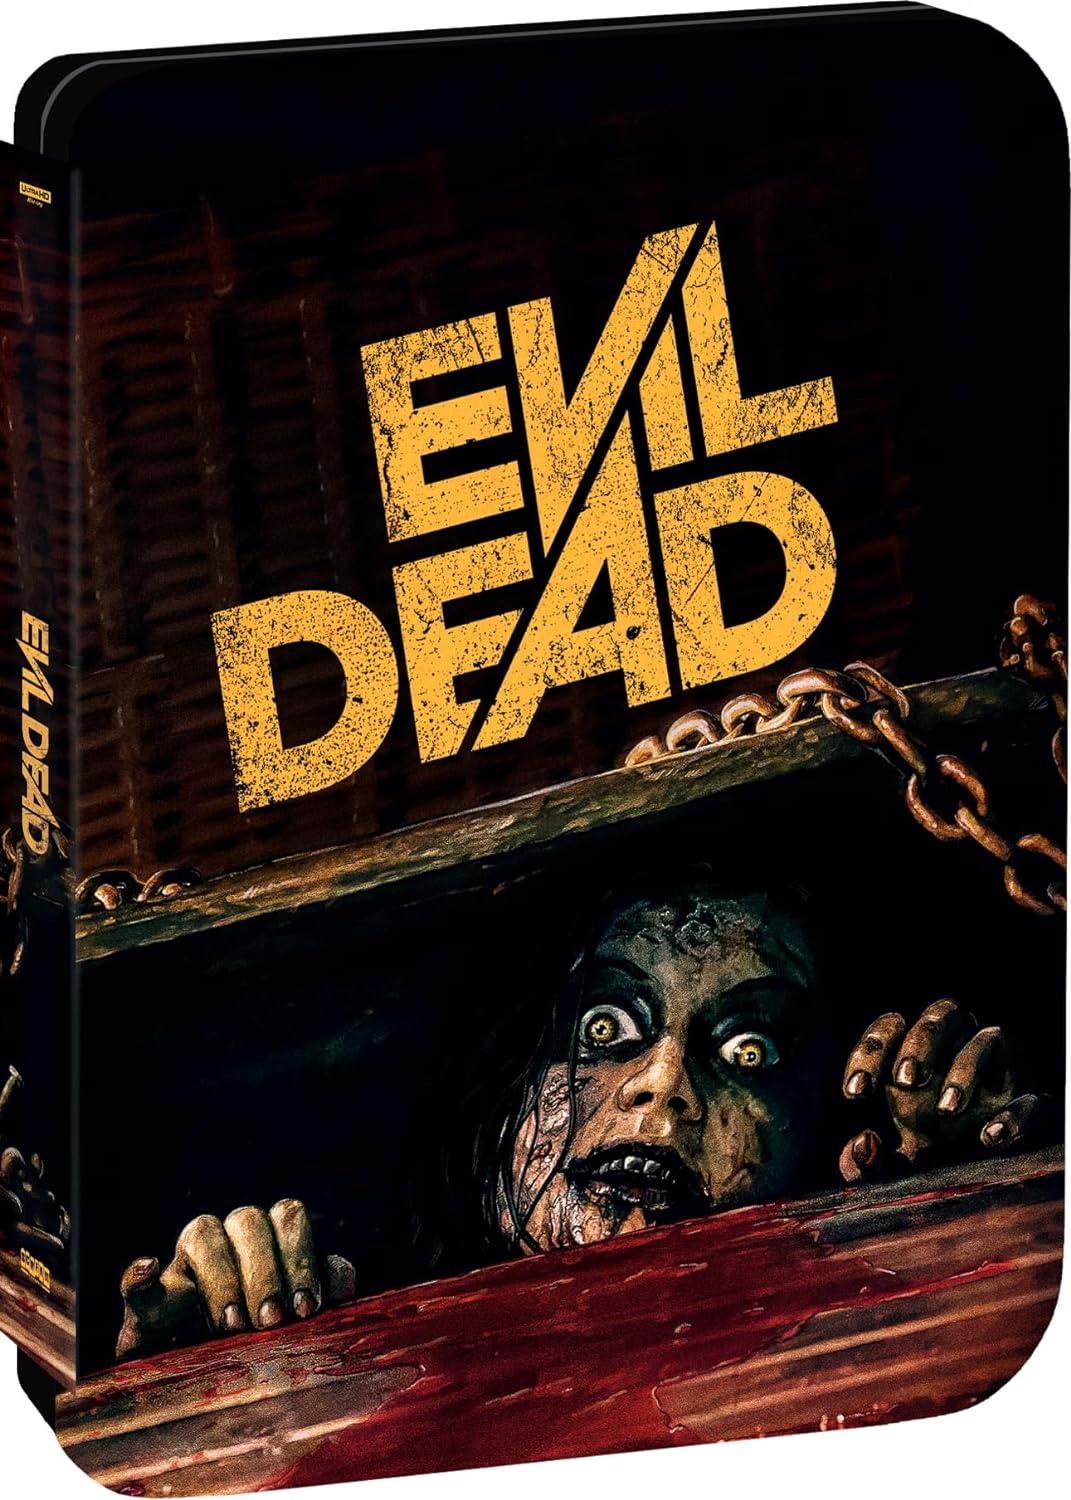 «Зловещие мертвецы» 2013 года в формате 4K Blu-ray SteelBook Edition доступны для предварительного заказа